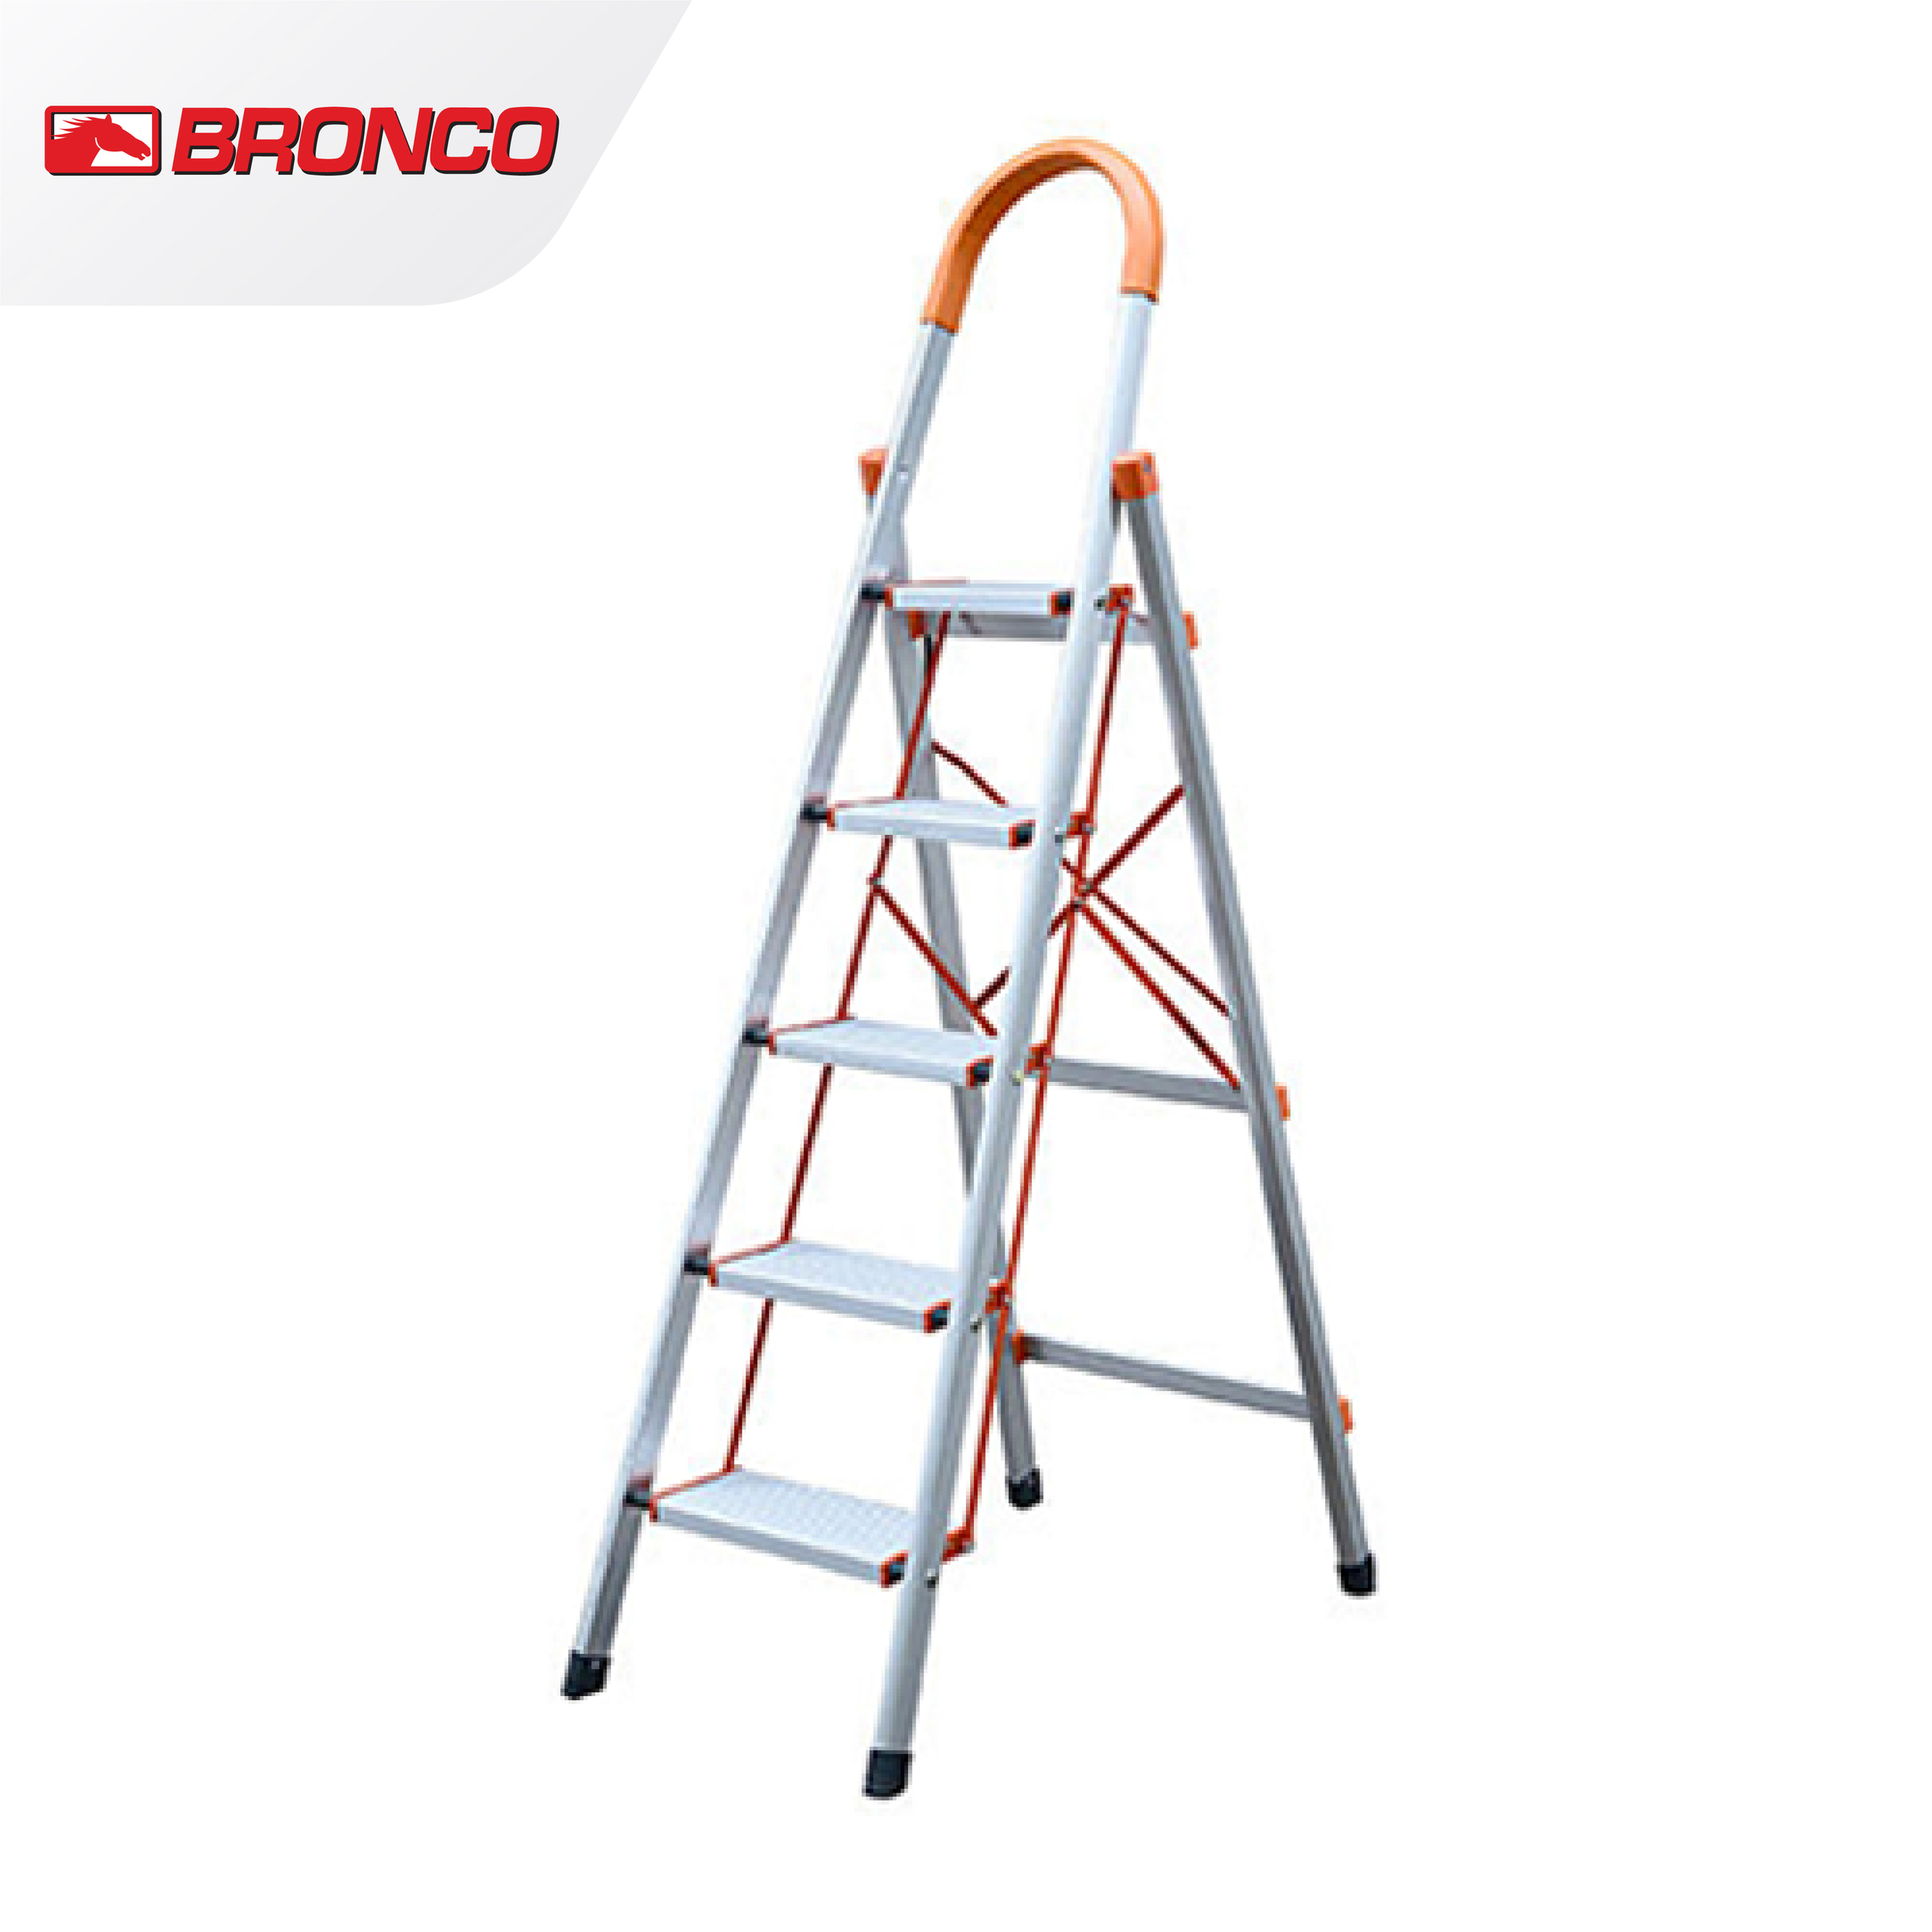 Bronco Premium Aluminum Ladder - 5 steps